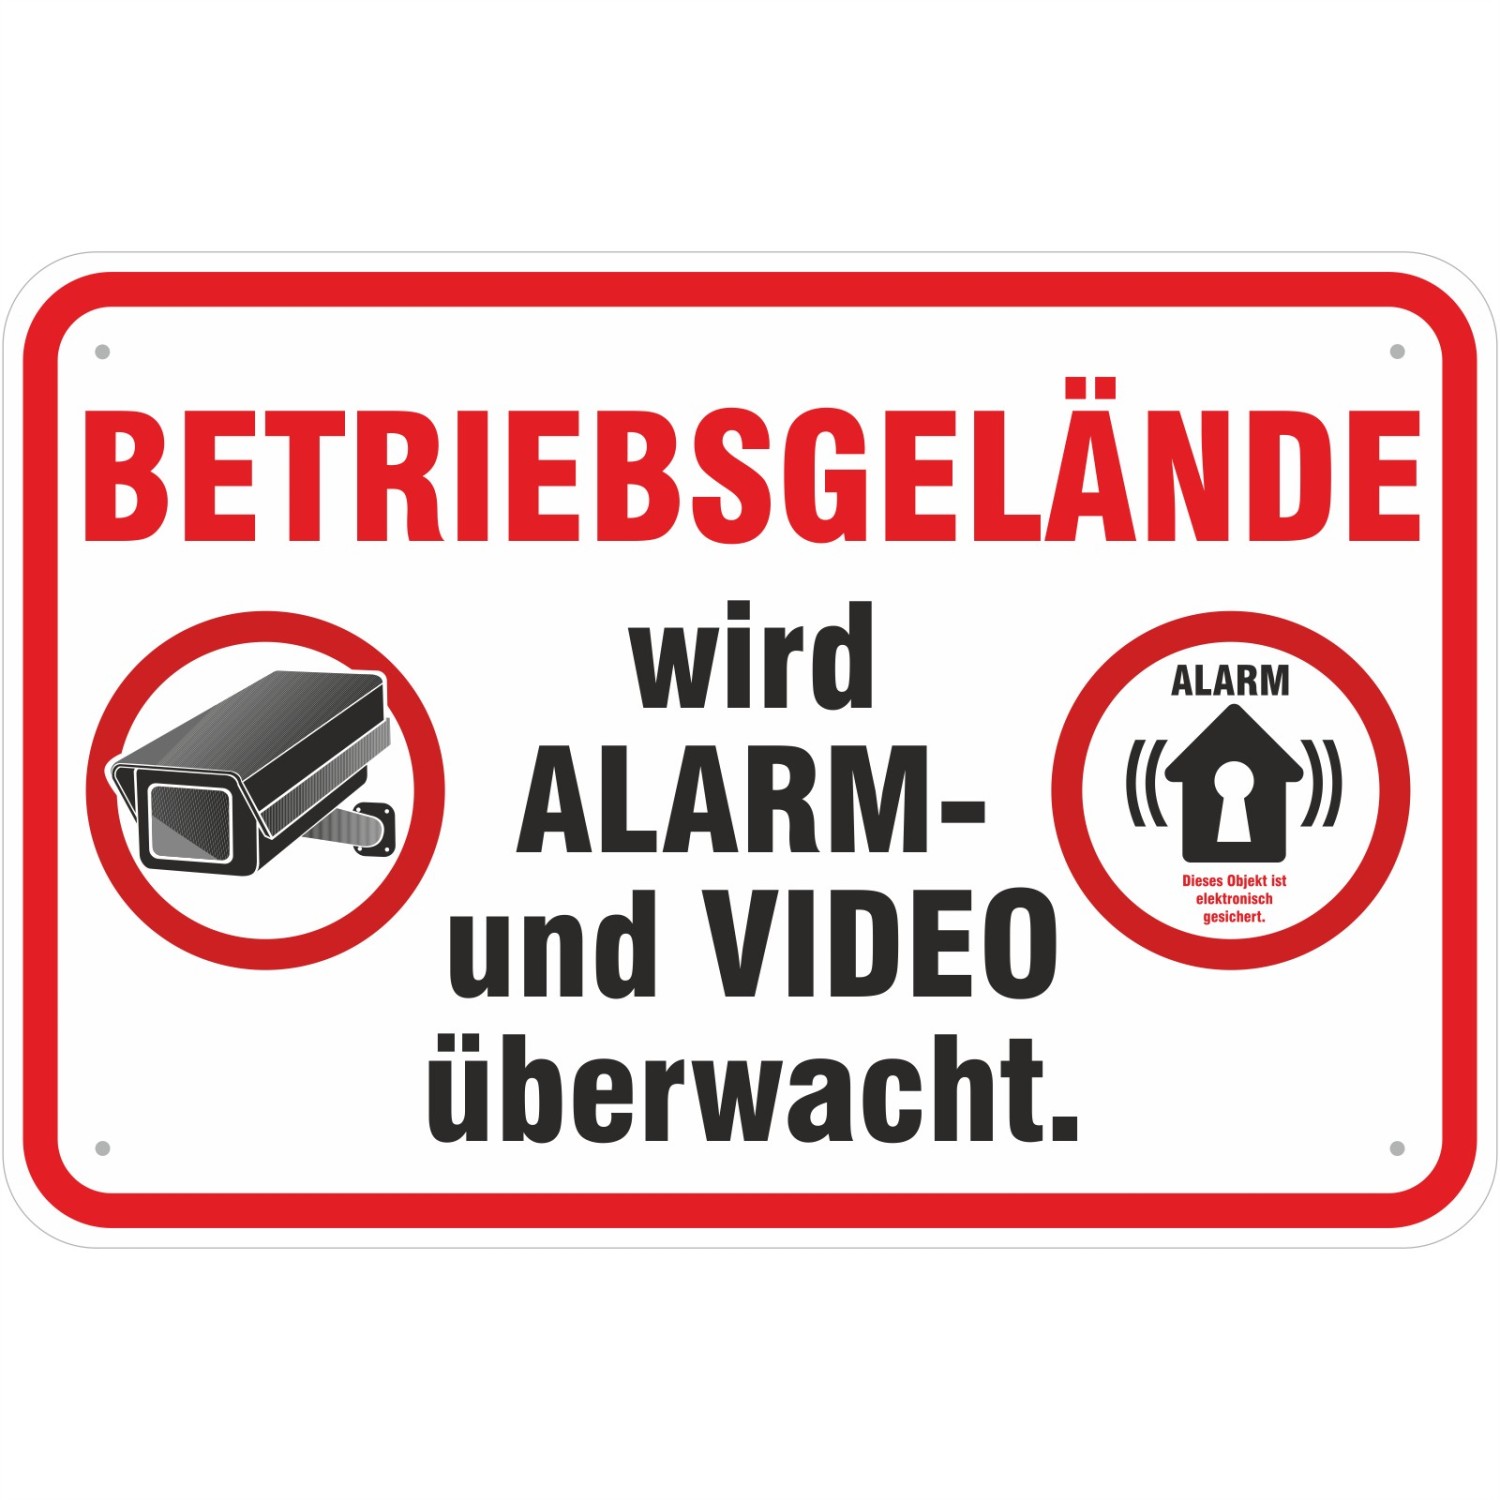 Achtung Kein Winterdienst Schild  HB-Druck Schilder, Textildruck &  Stickerei Onlineshop